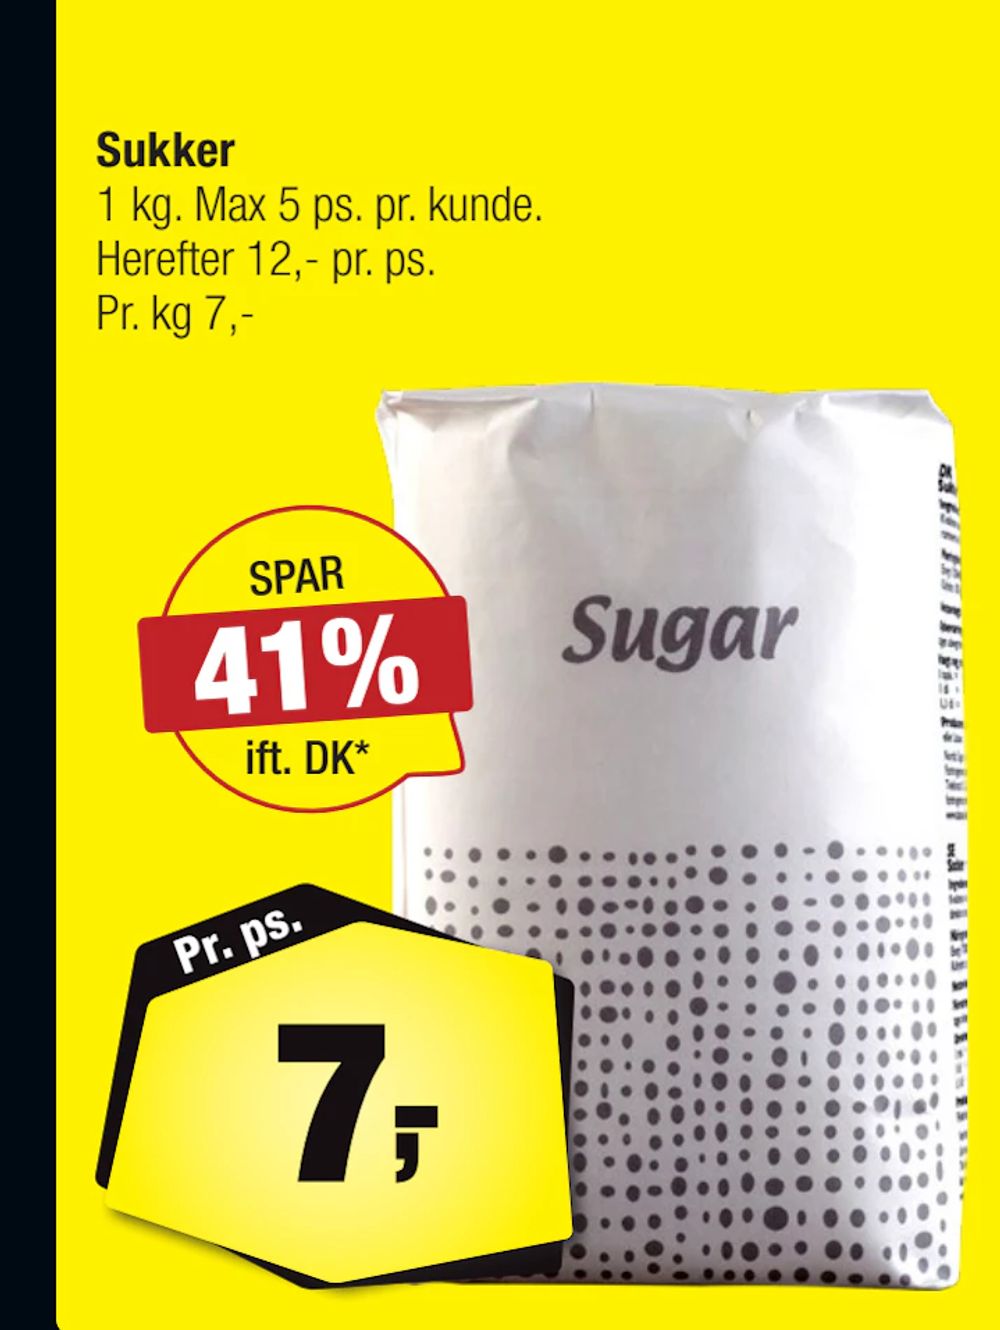 Tilbud på Sukker fra Calle til 7 kr.